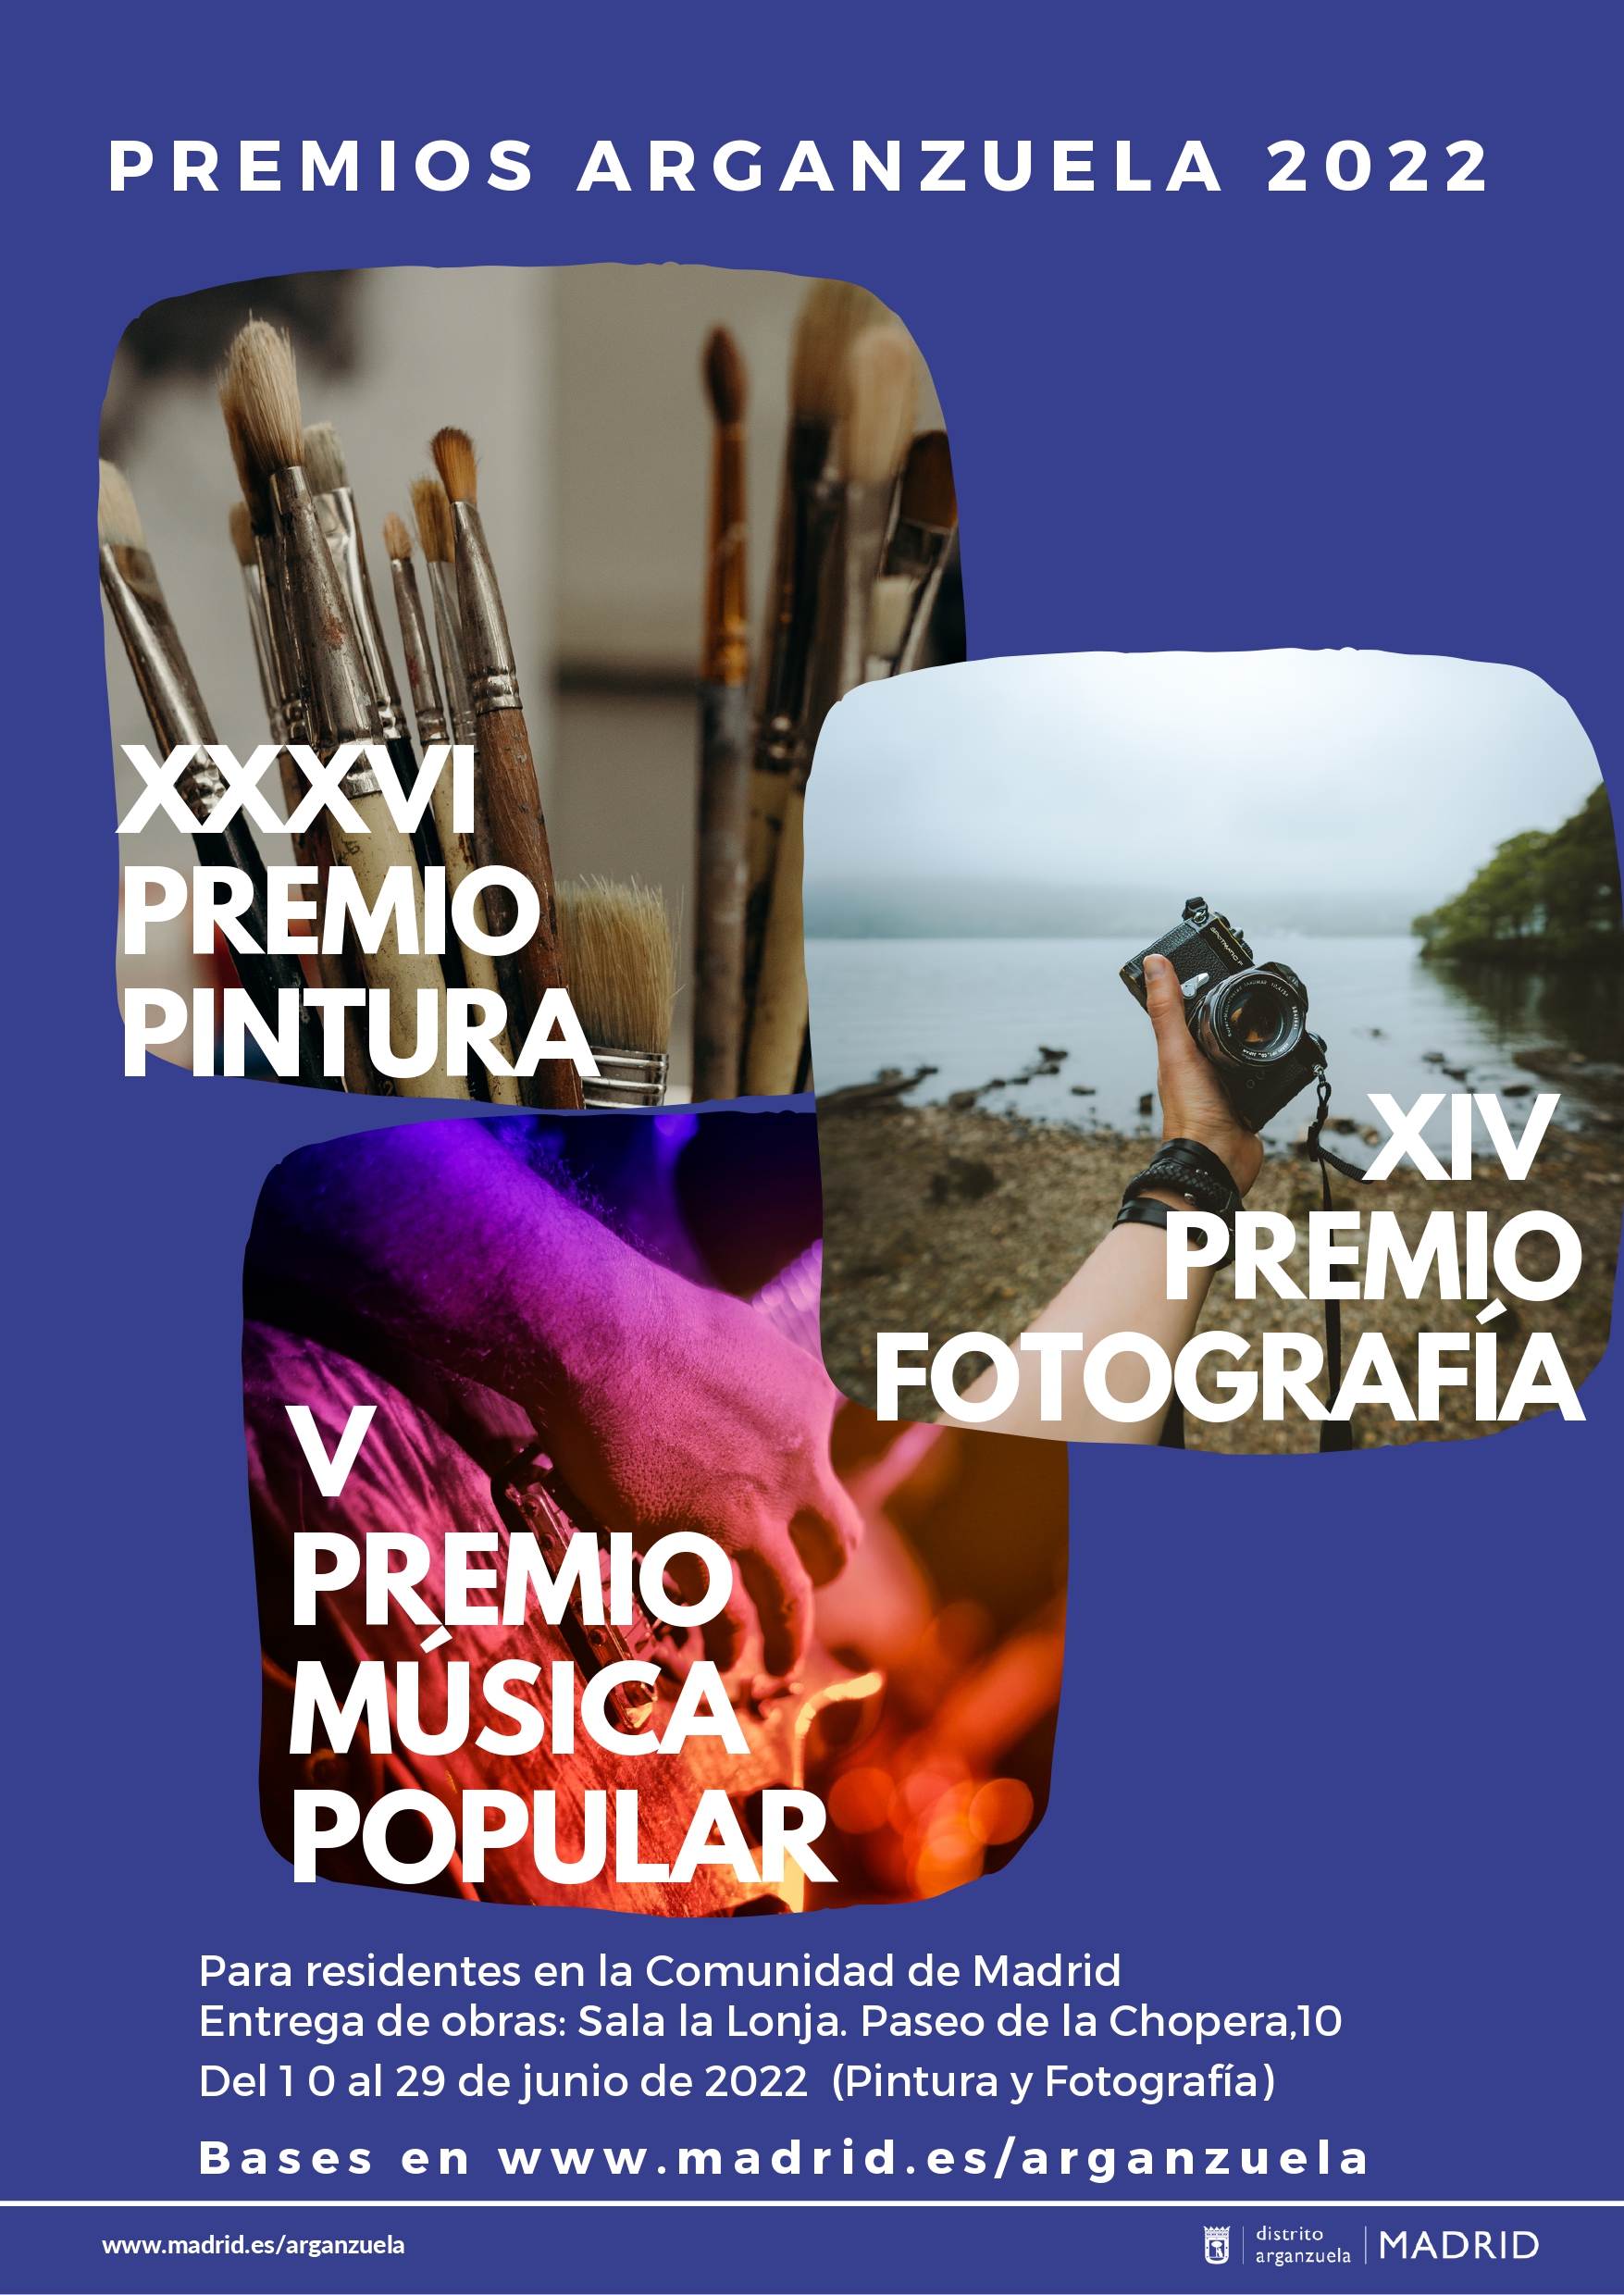 Premios Culturales Arganzuela